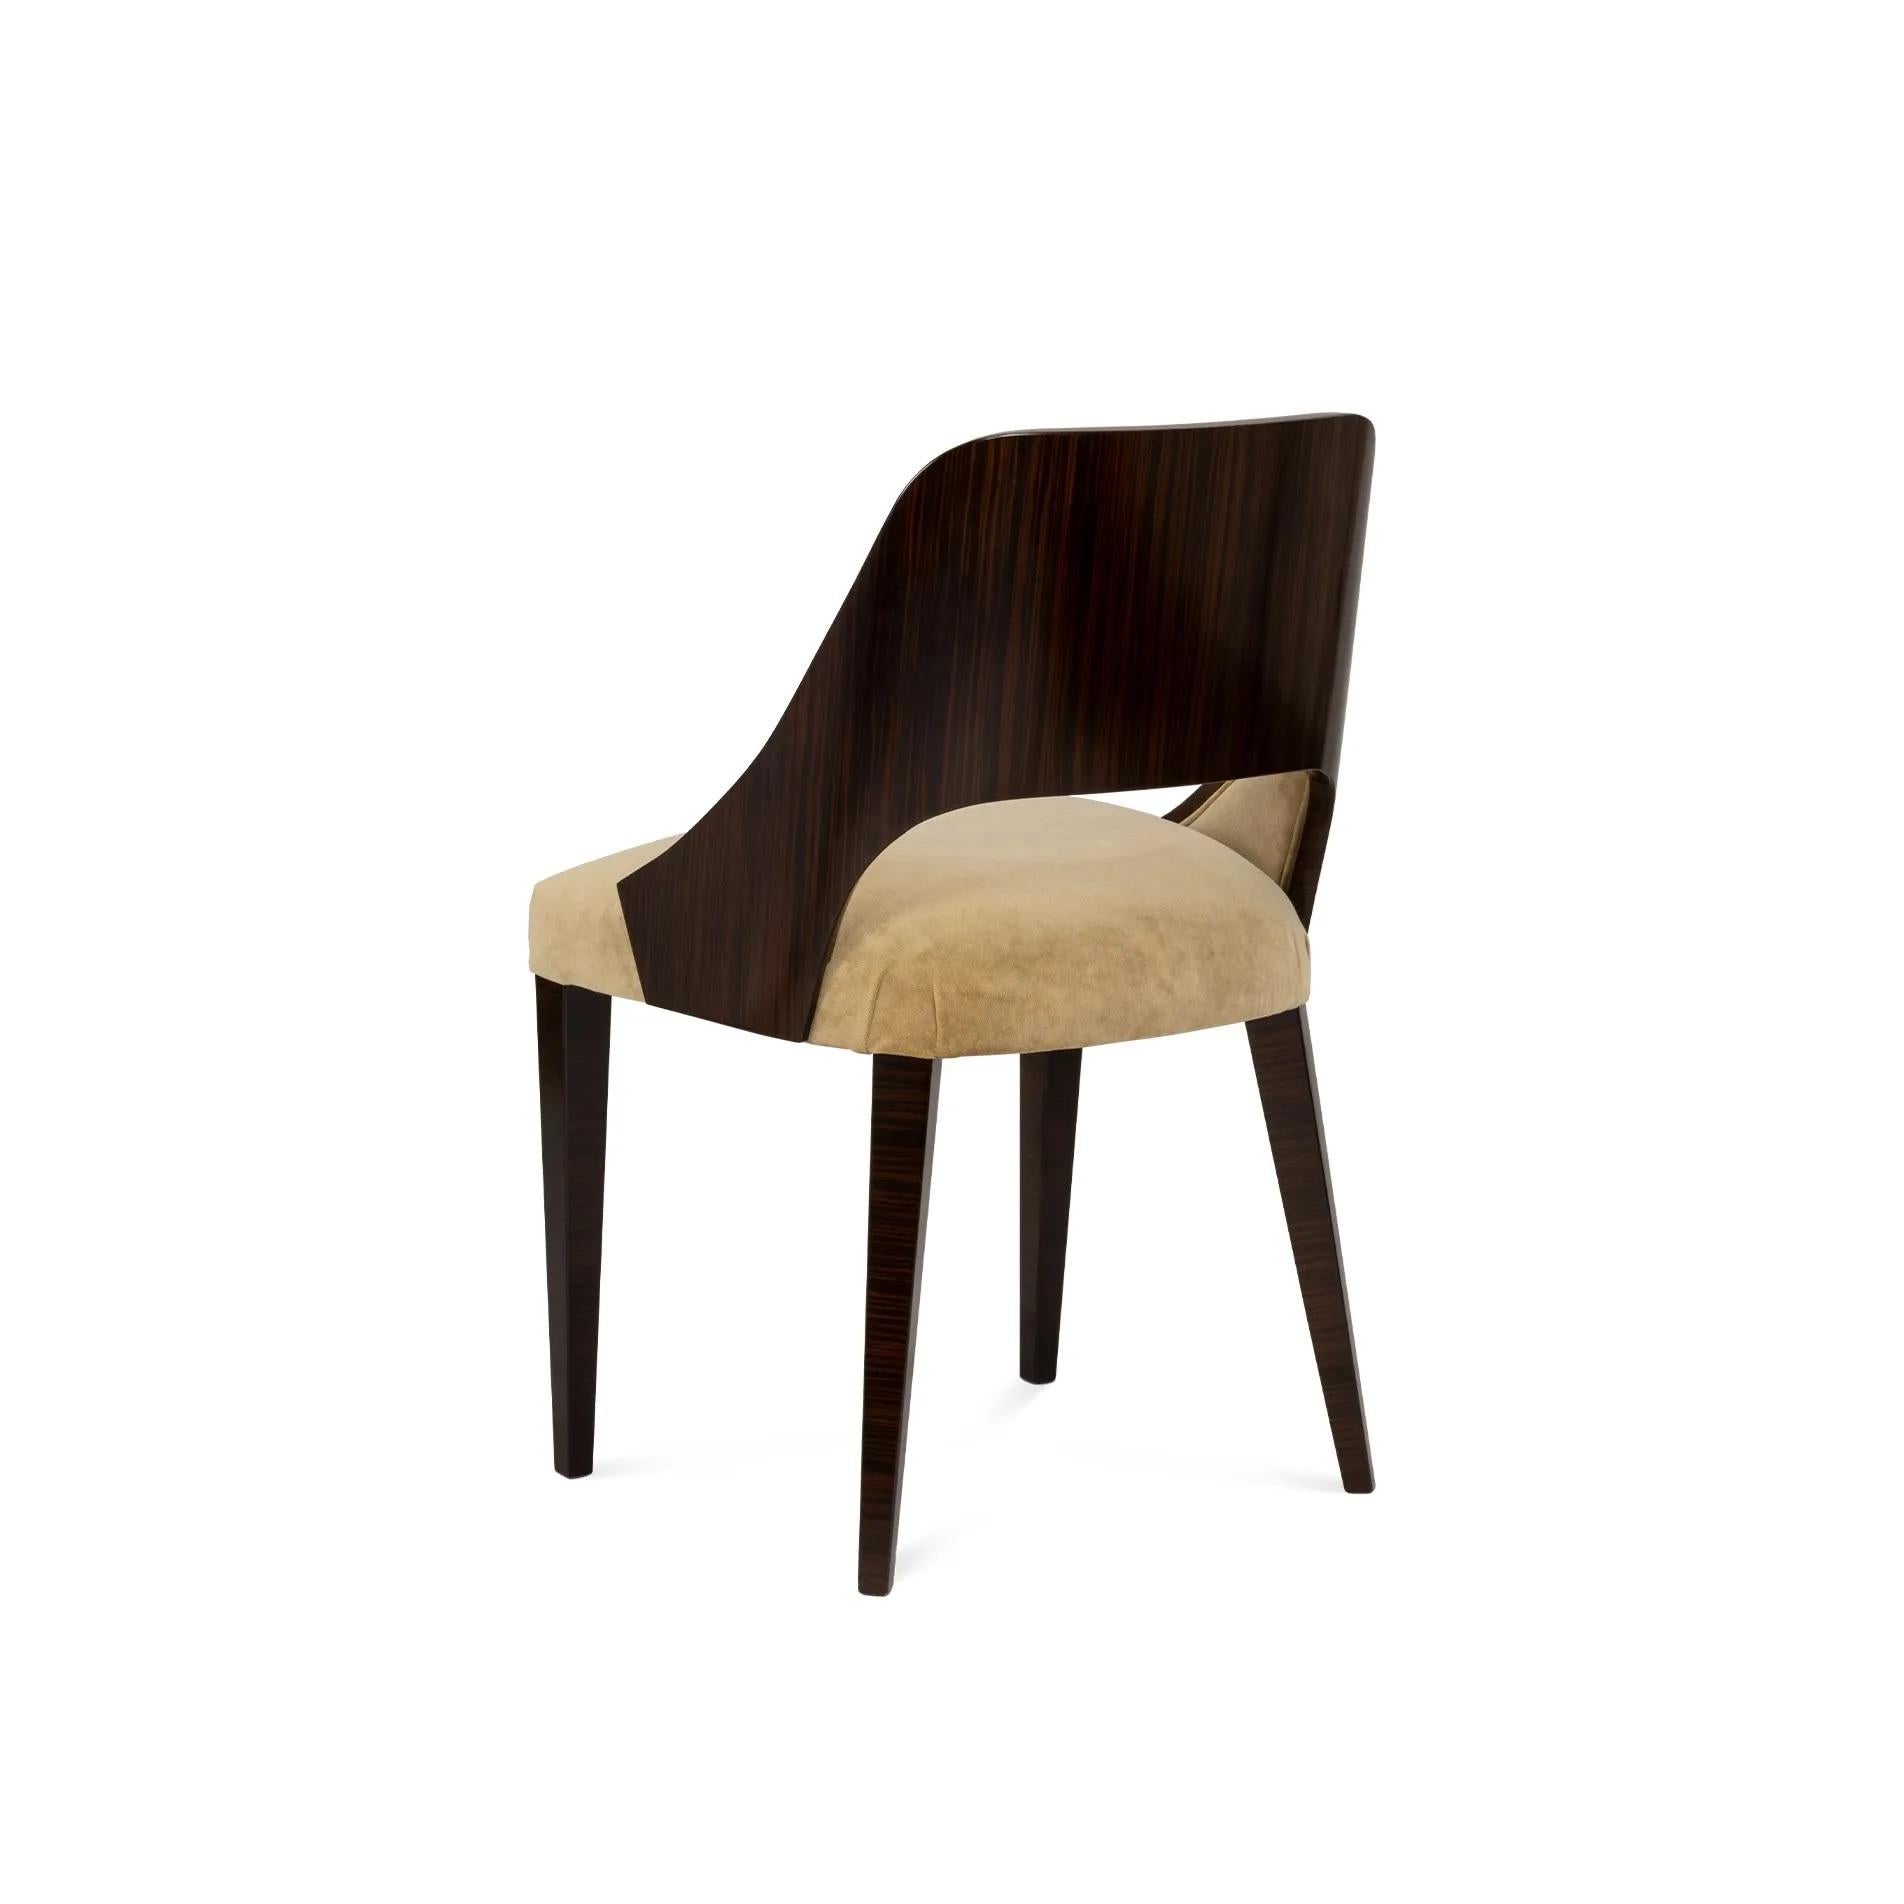 Dieser gepolsterte Sessel bietet Komfort und Klasse. Er verbindet plüschigen Samt mit einem eleganten Rahmen aus Ebenholz. Die dunklen Holzbeine, die wie robuste Säulen wirken, tragen eine Sitzfläche, die zu langen Gesprächen einlädt. Ein zeitloses